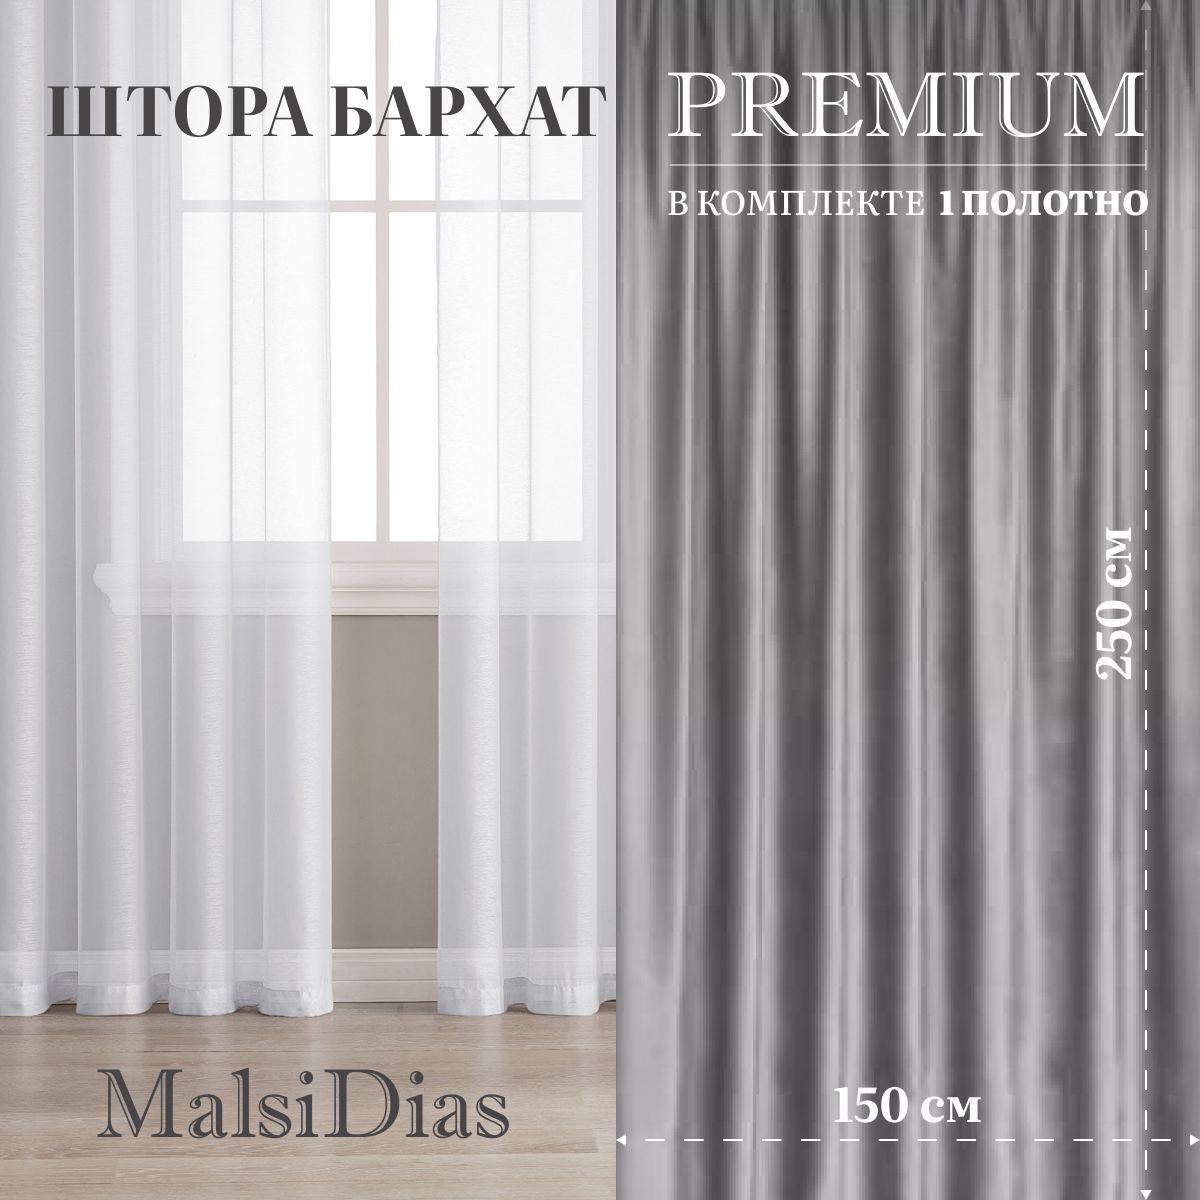 Штора бархат MalsiDias 250х150, светло-серый. Портьера на шторной ленте. Шторы для комнаты, гостиной, кухни.